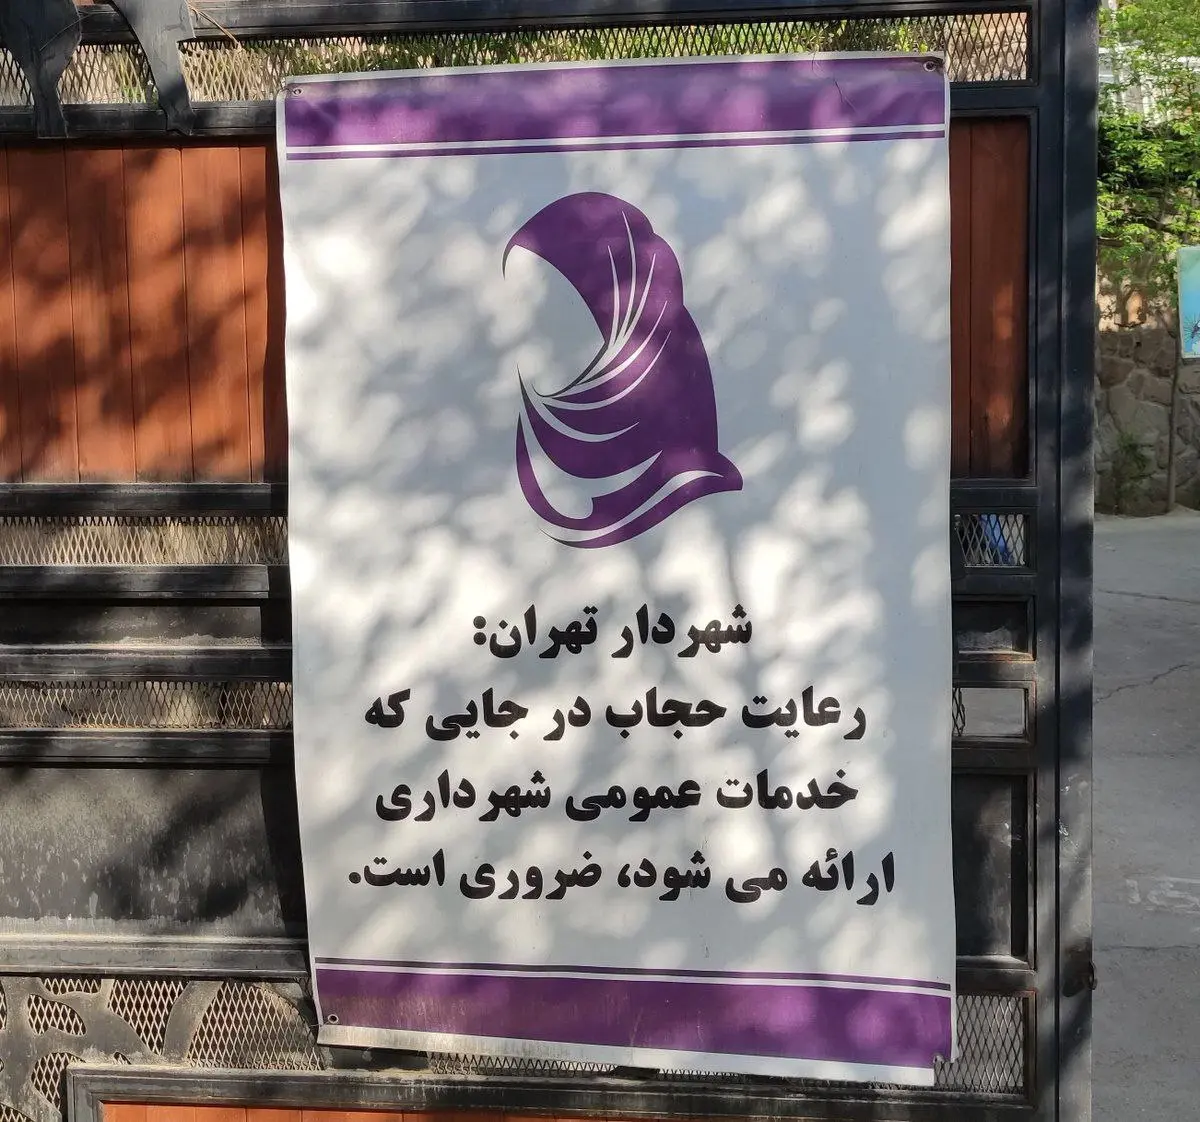 بنر جنجالی شهرداری تهران برای دعوت زنان به رعایت حجاب + عکس 2